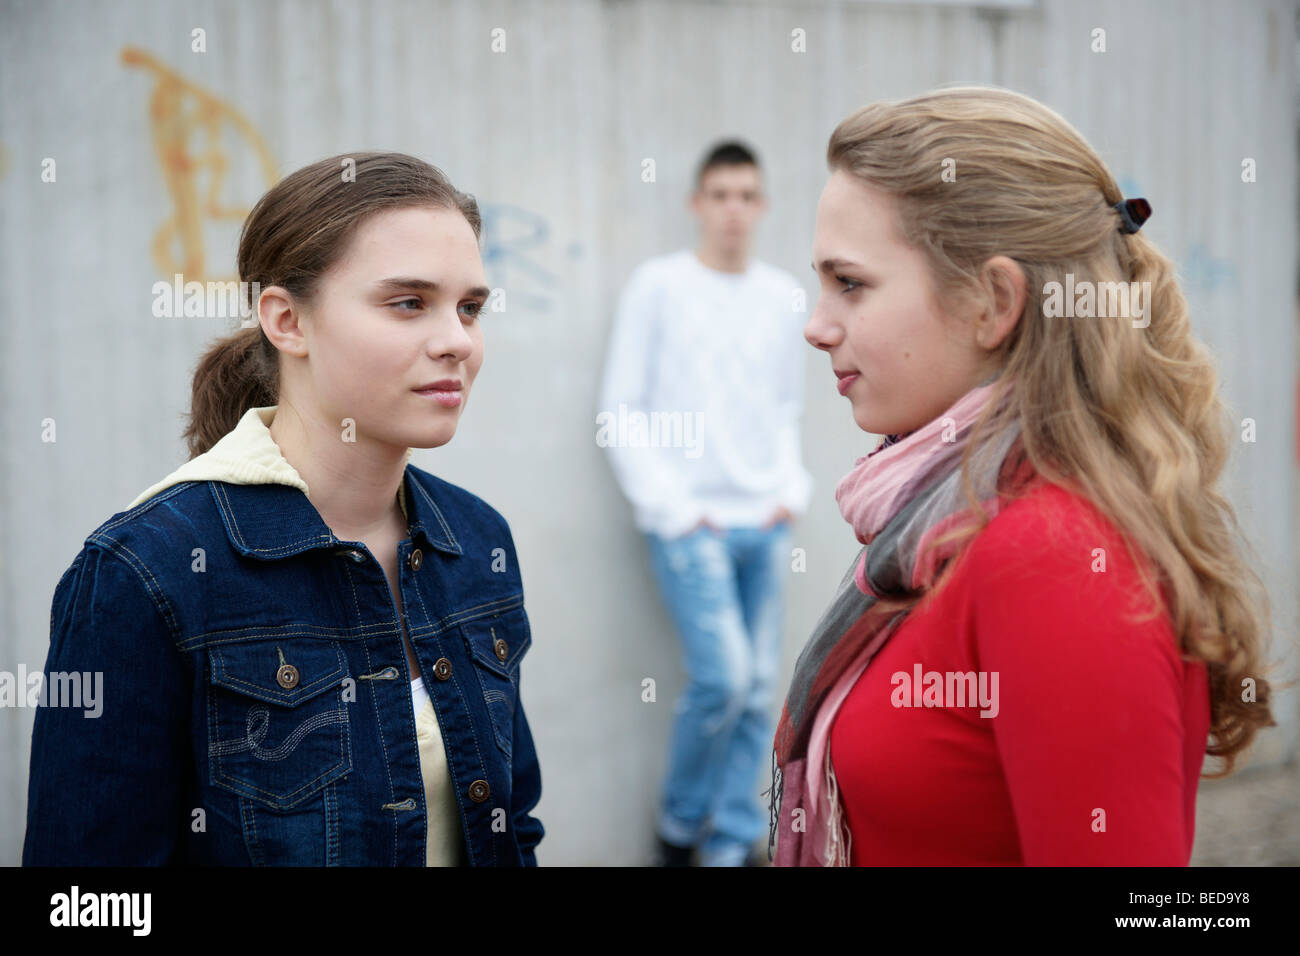 La rivalidad entre dos chicas adolescentes Foto de stock